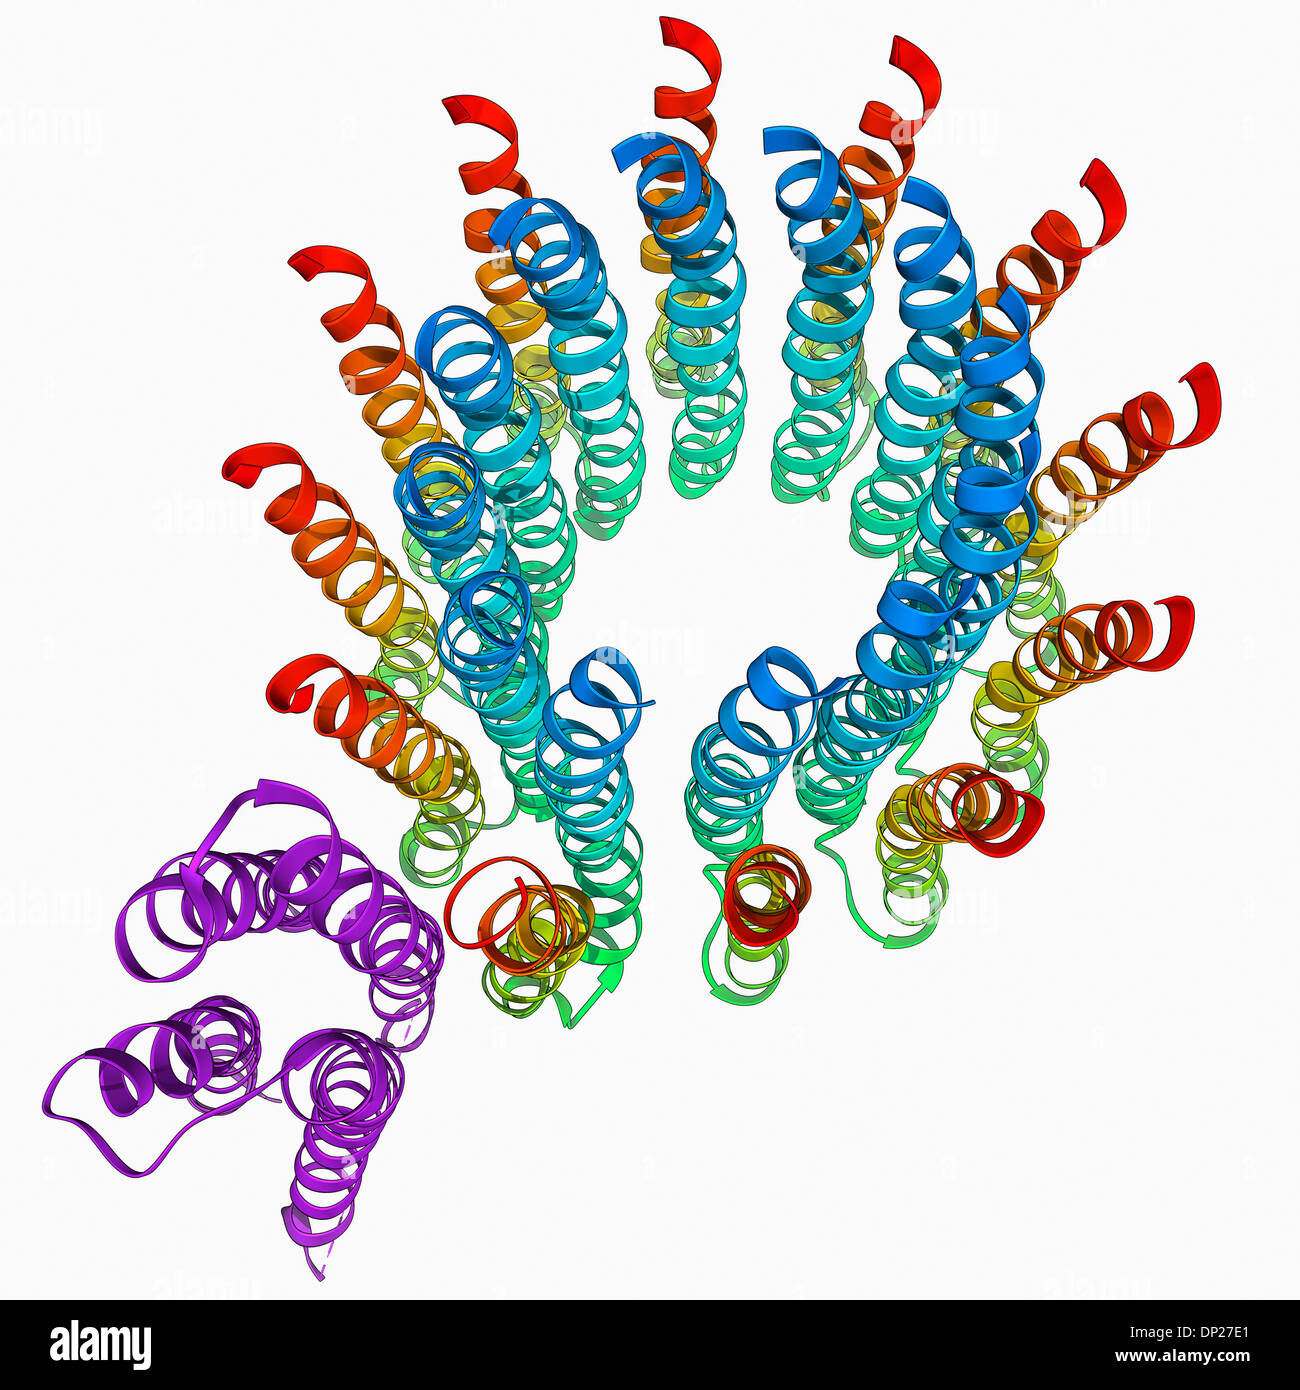 Molécule d'ATP synthase Banque D'Images